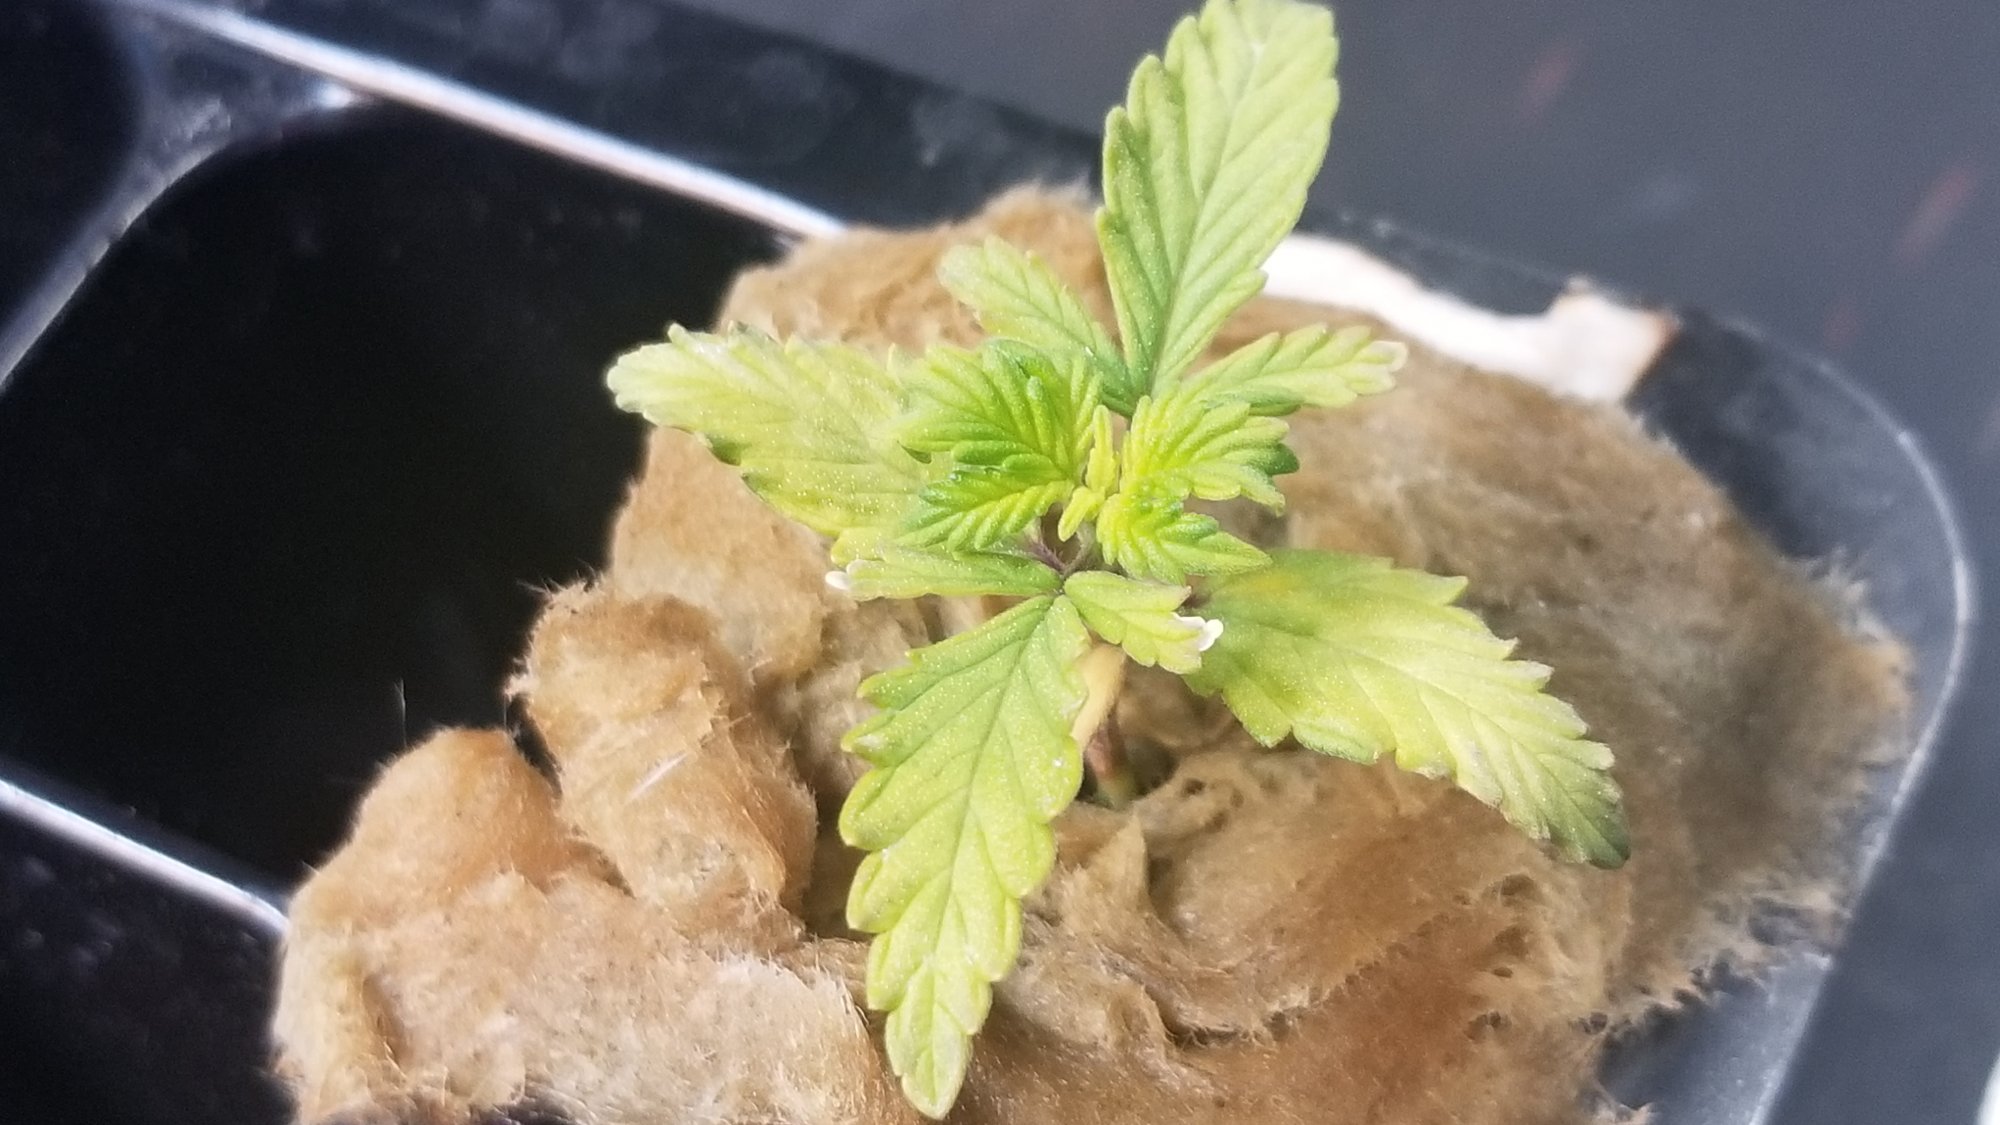 My first autoflower hydroponics grow 7